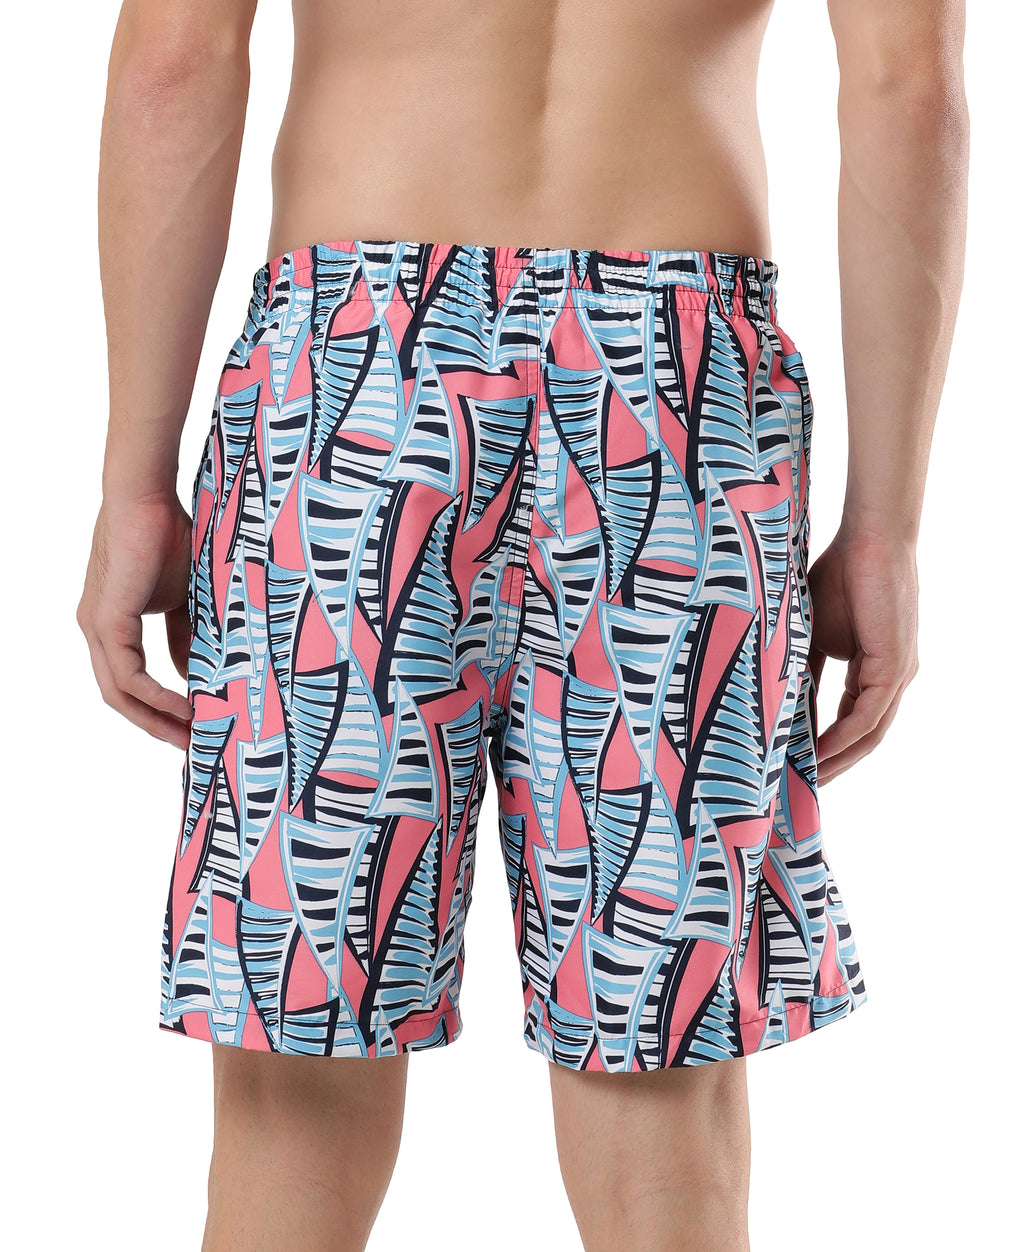 Swimwear Men - Boys Swimsuits - Swim Shorts Online - SPEEDO ONLINE SHOP